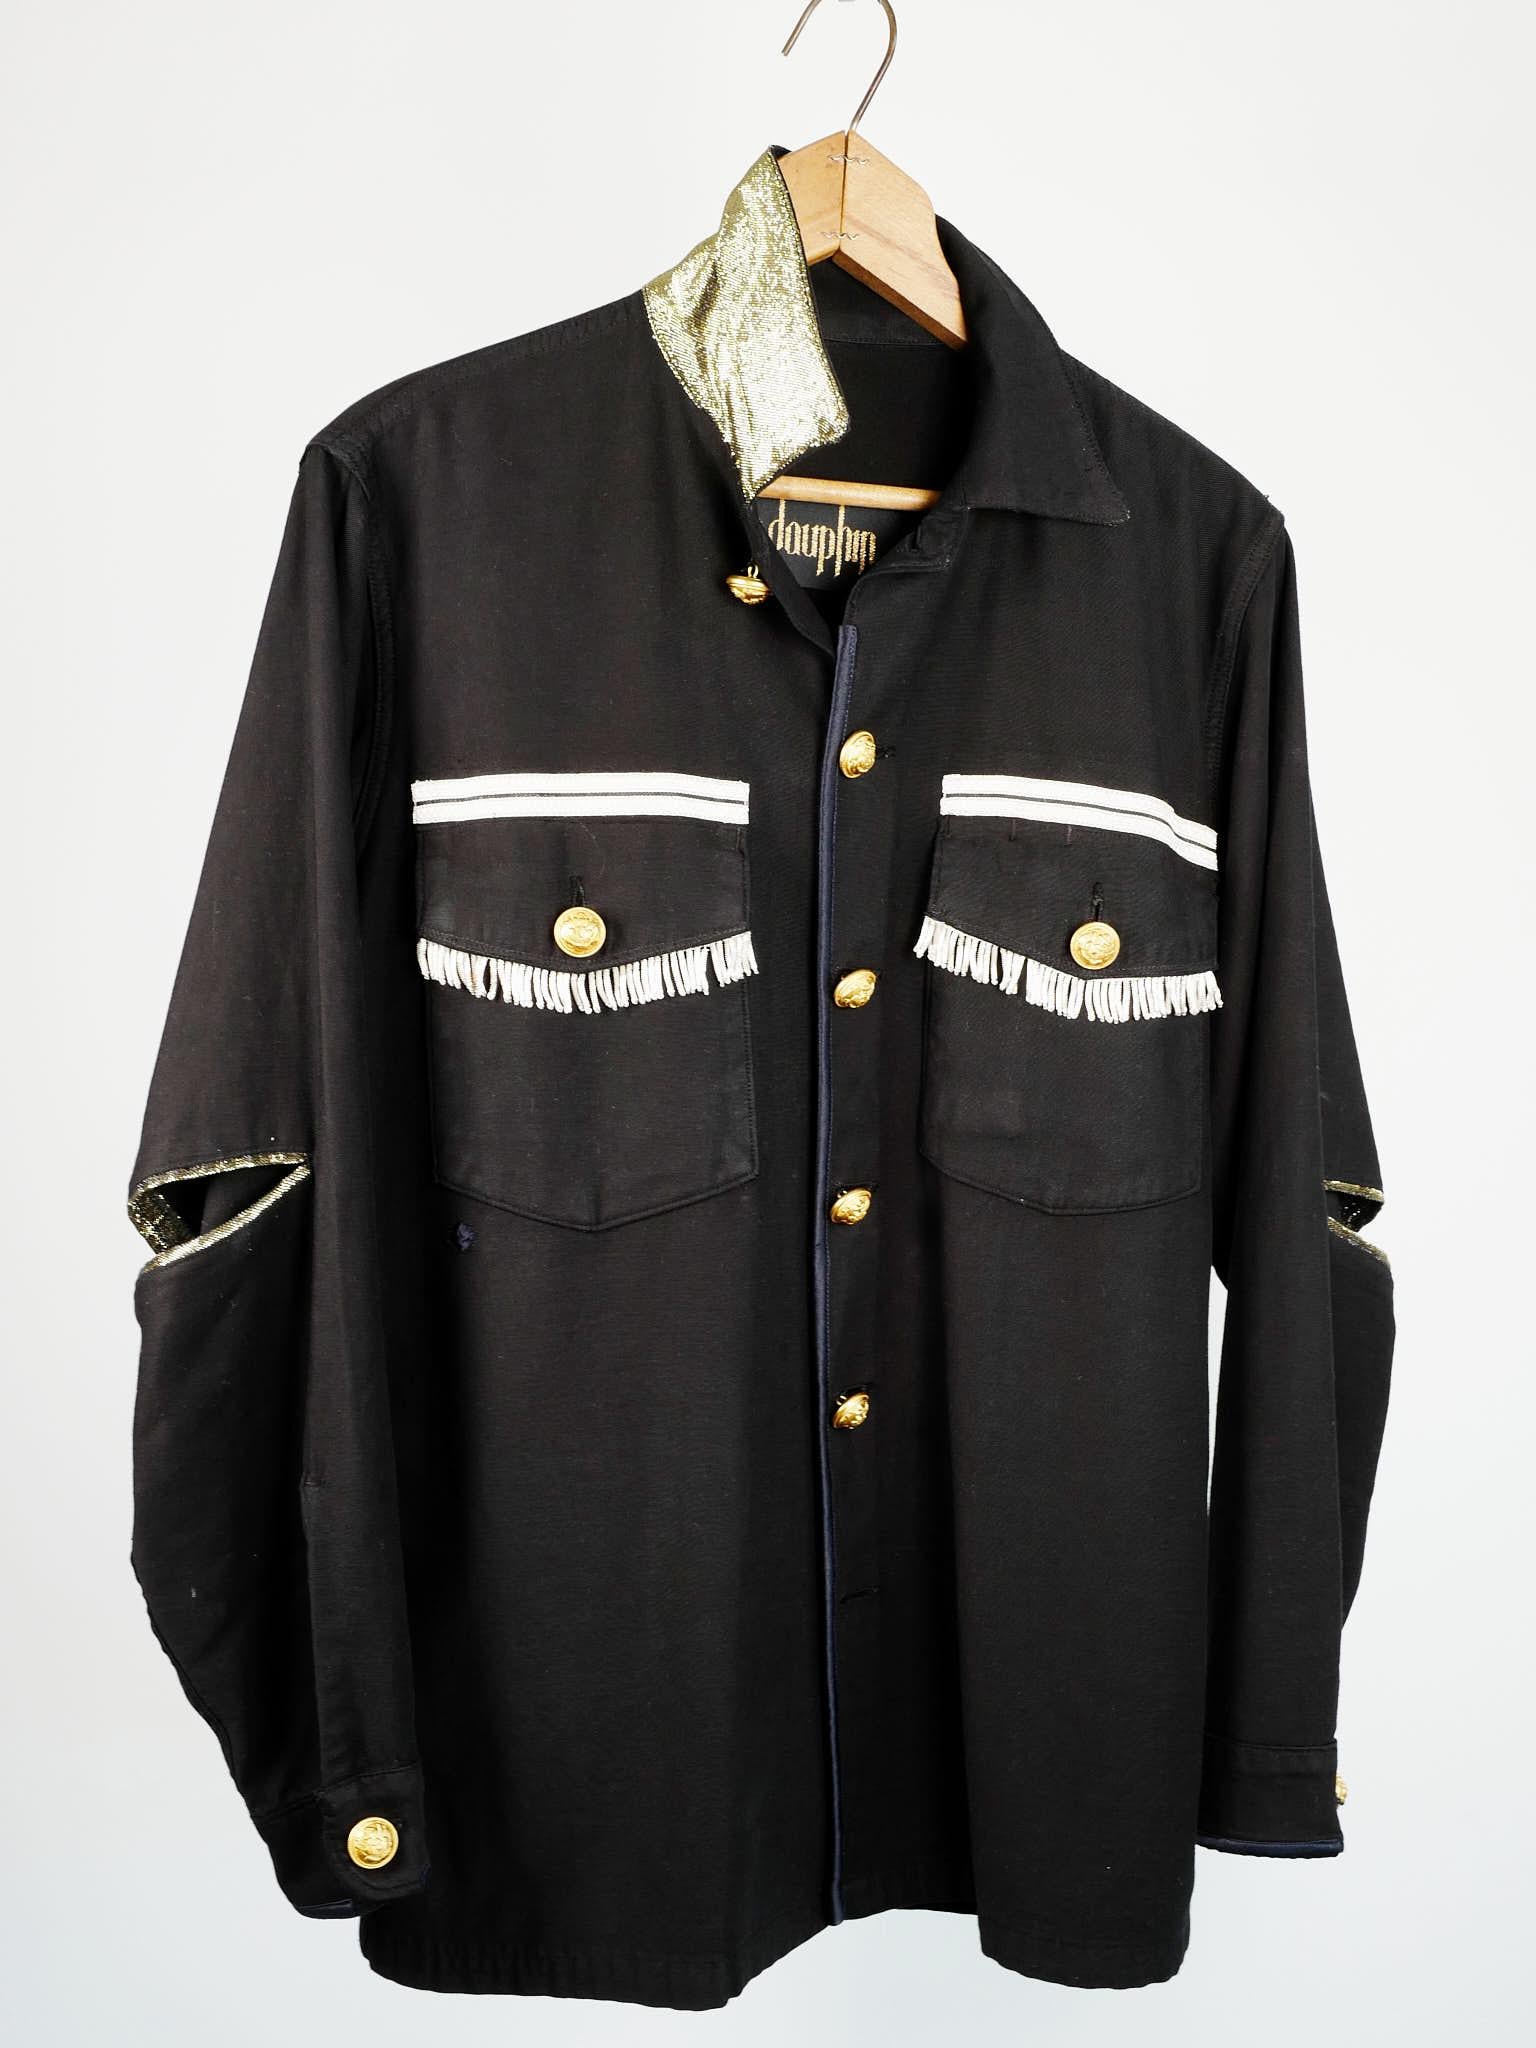 Women's Vintage Jacket in Black Embellished Silver Fringe Braids Gold Buttons Large